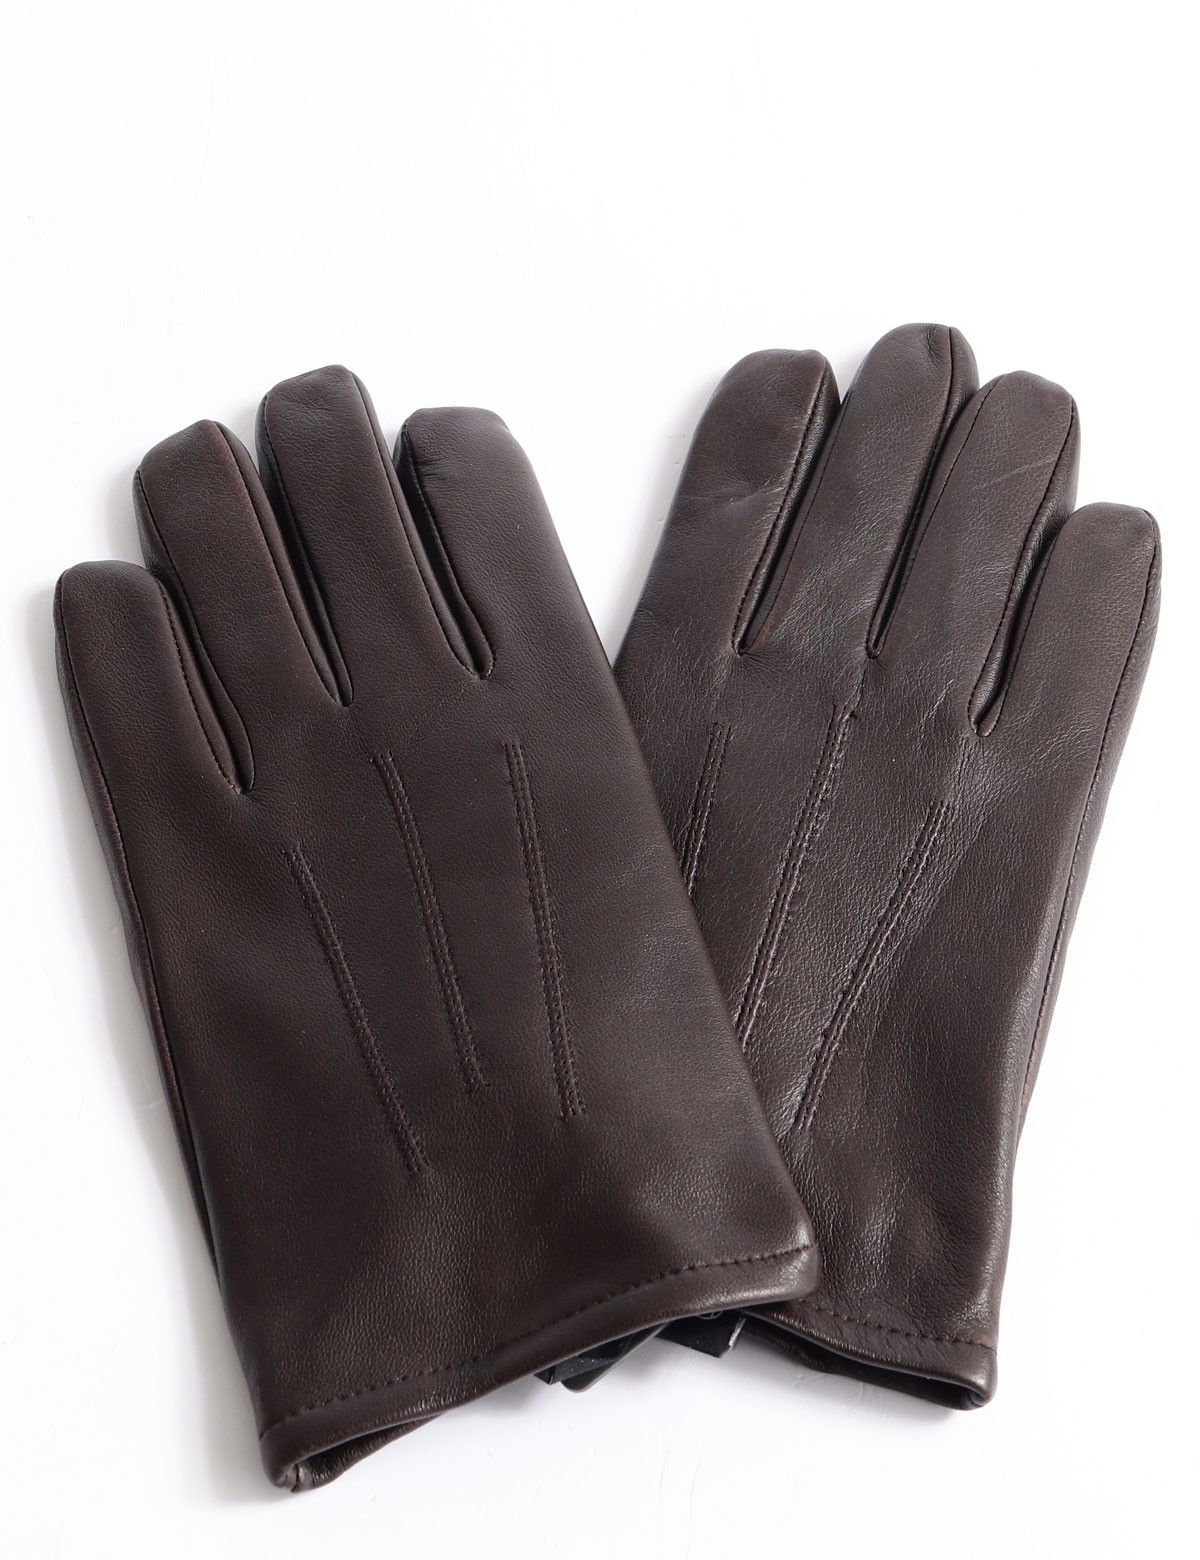 touch Group gloves | Scalia Liam Kessler